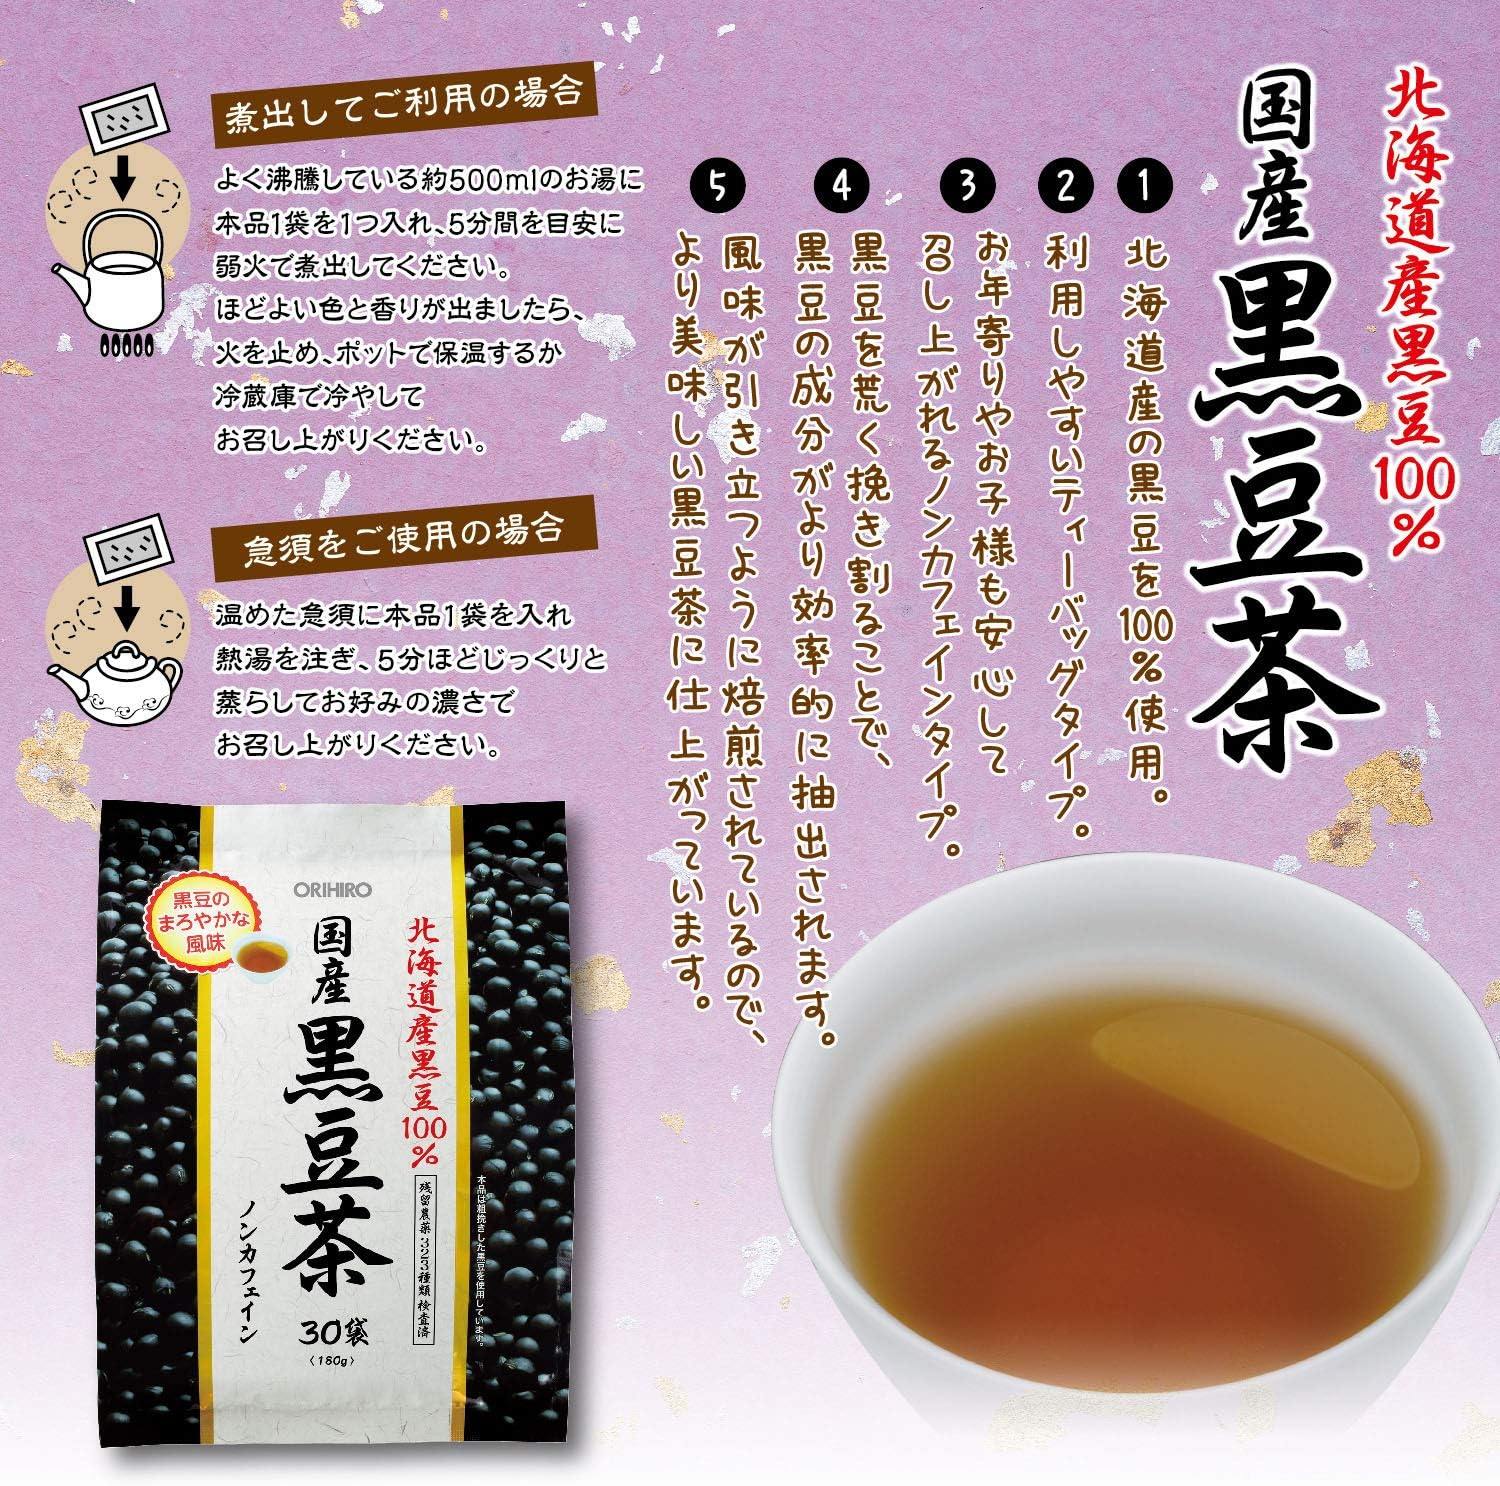 ORIHIRO北海道黑豆茶100% 6g×30袋入